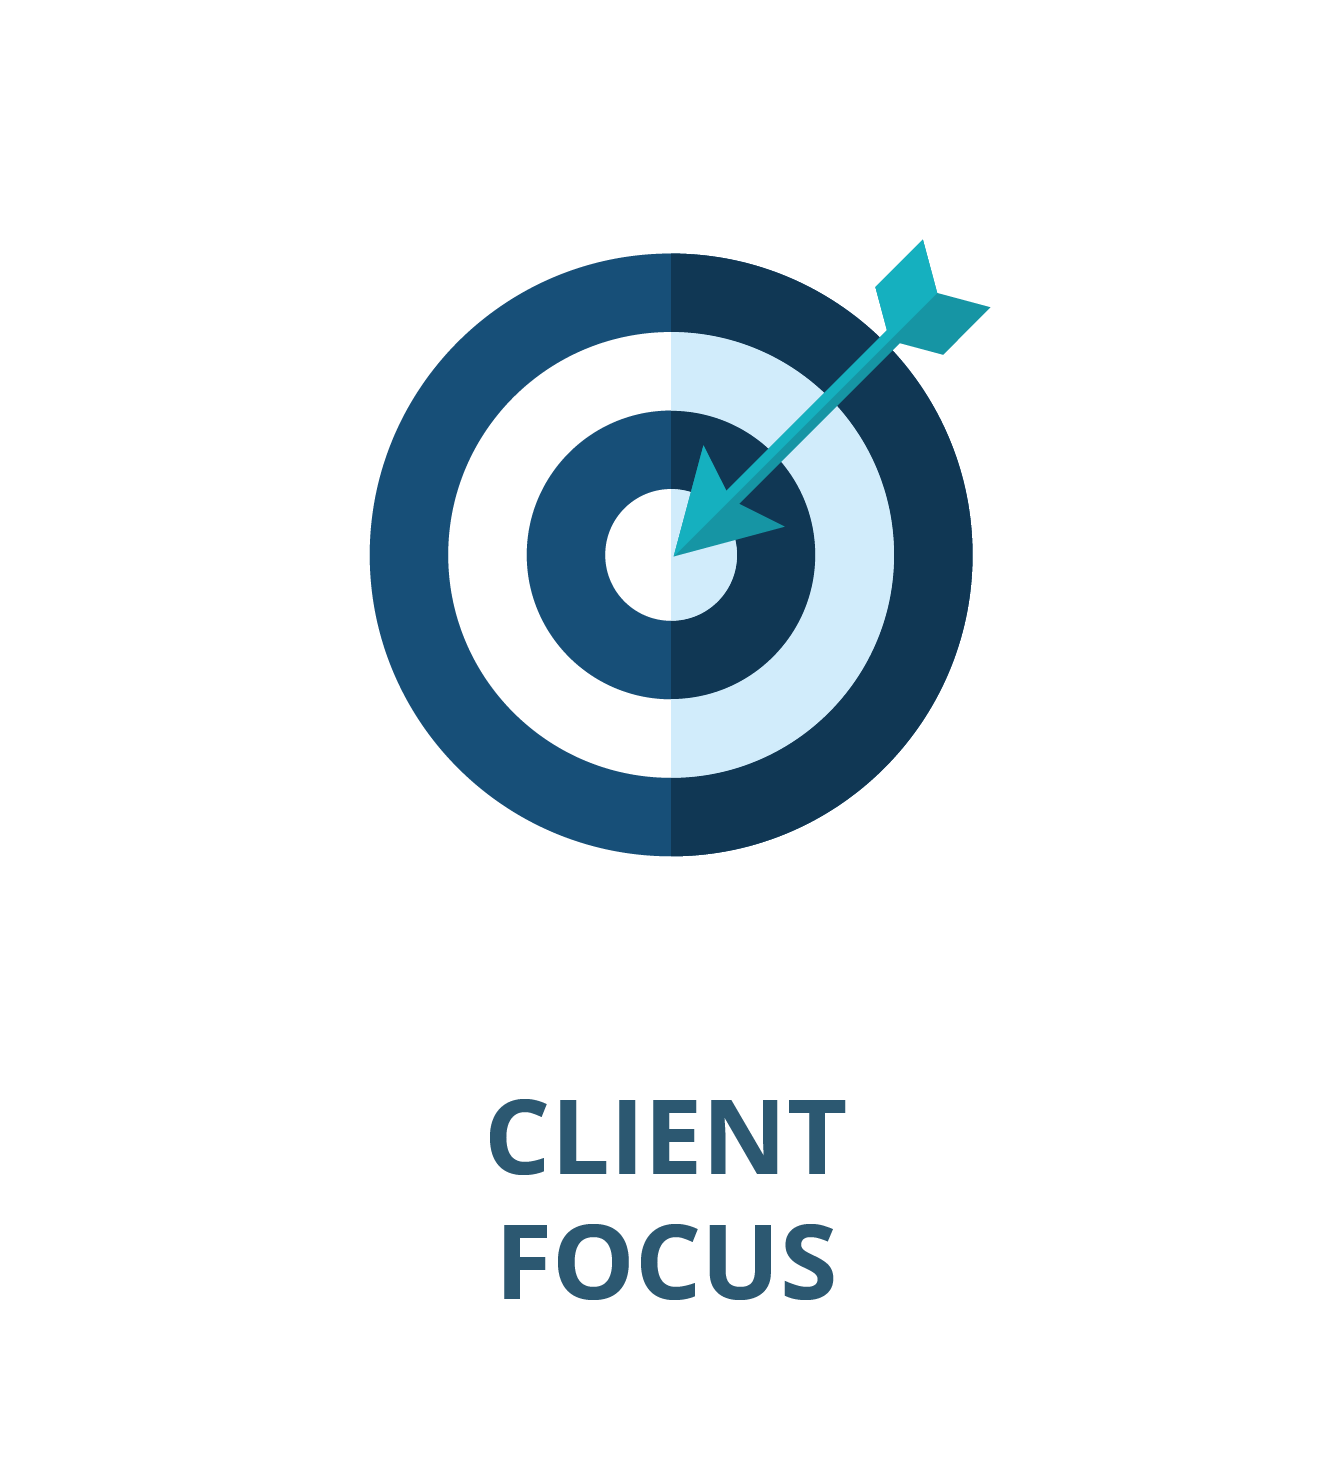 Dedicated Client Focus